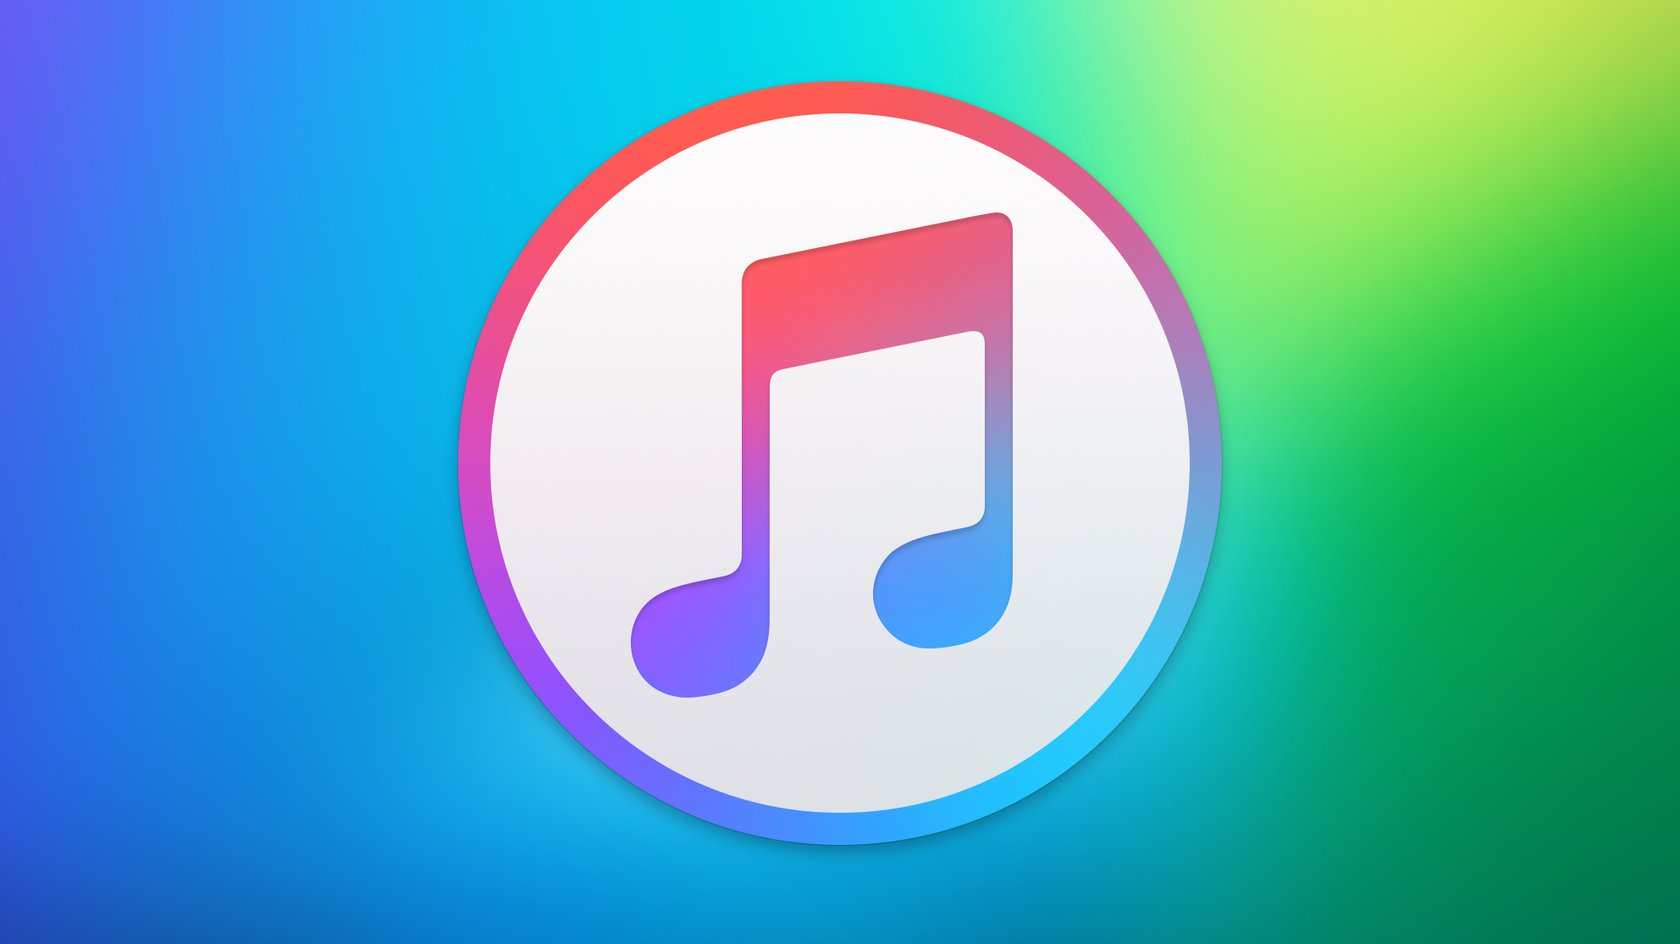 Включи музыку тв. Эппл Мьюзик. Значок Эппл Мьюзик. Иконка приложения Эппл Мьюзик. Apple Music лого.